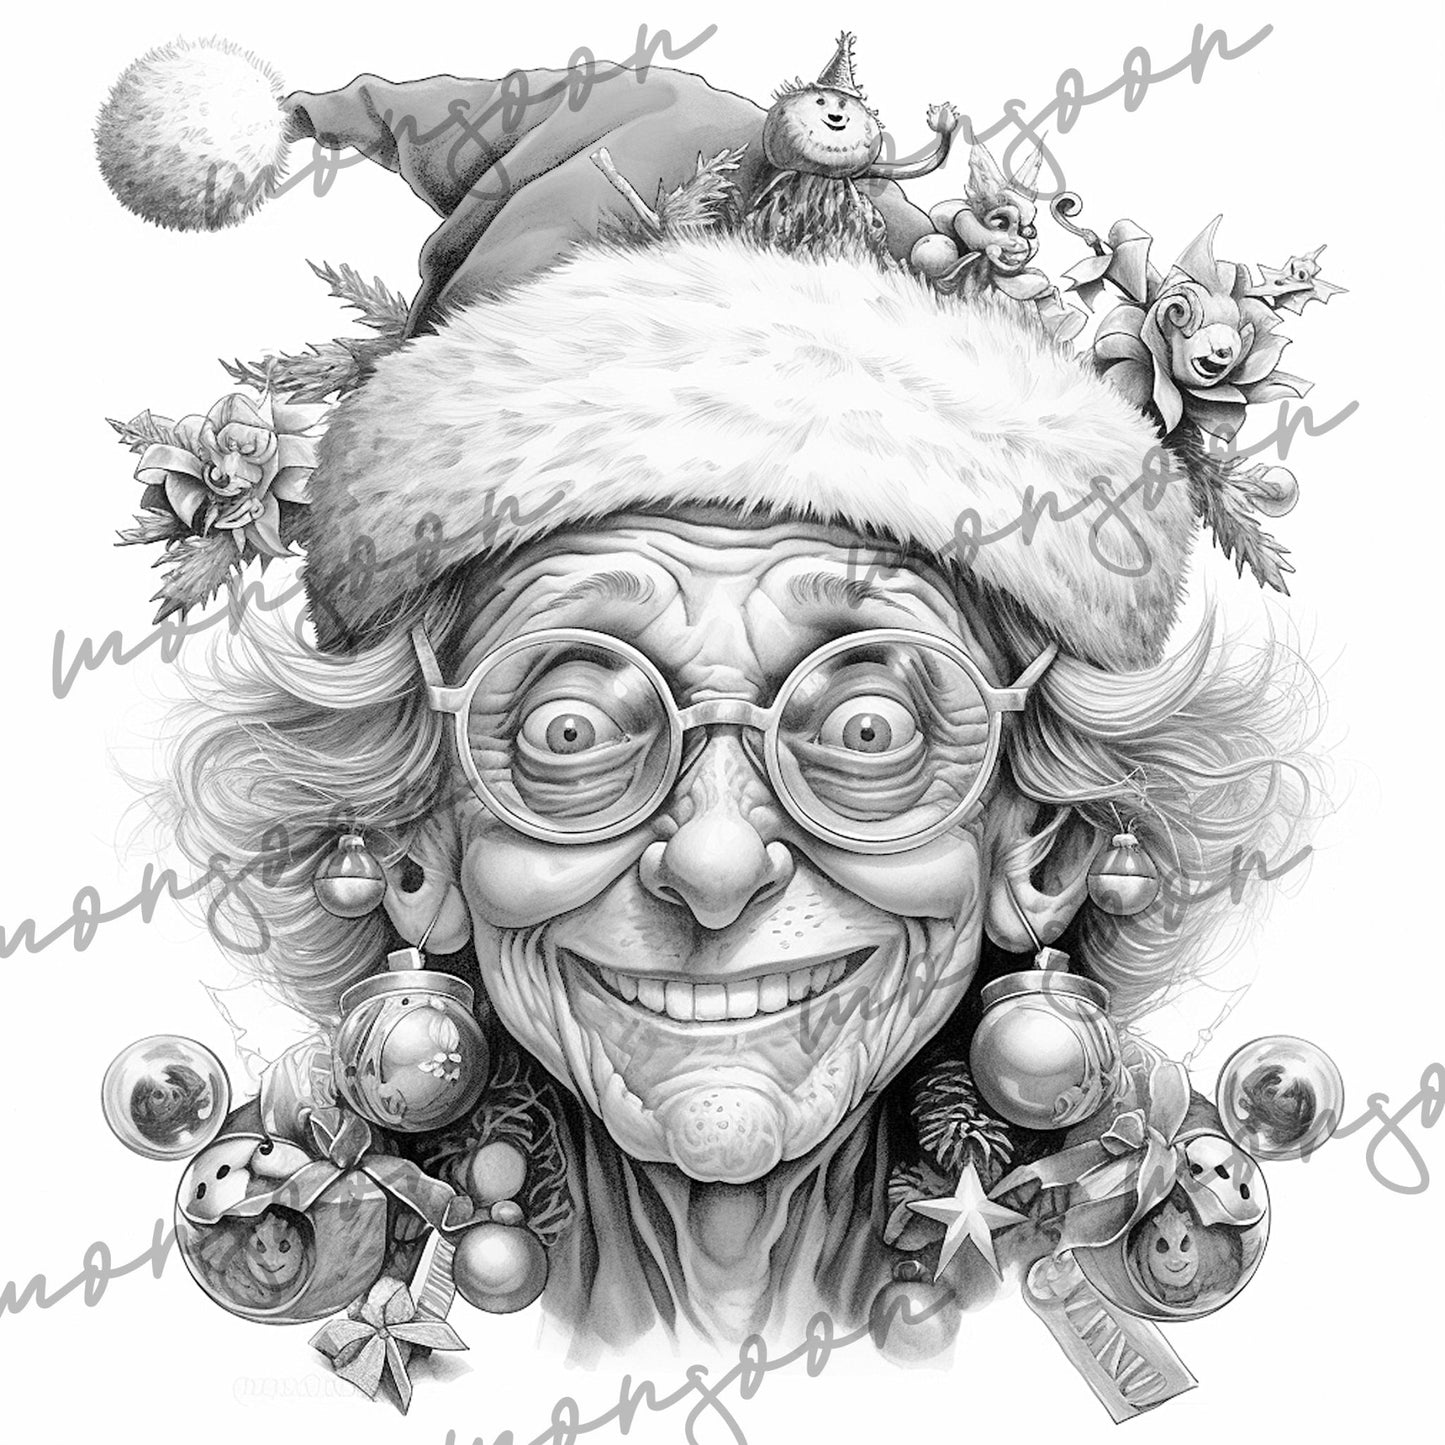 Crazy Grandma on Christmas Coloring Book (Printbook) - Monsoon Publishing USA